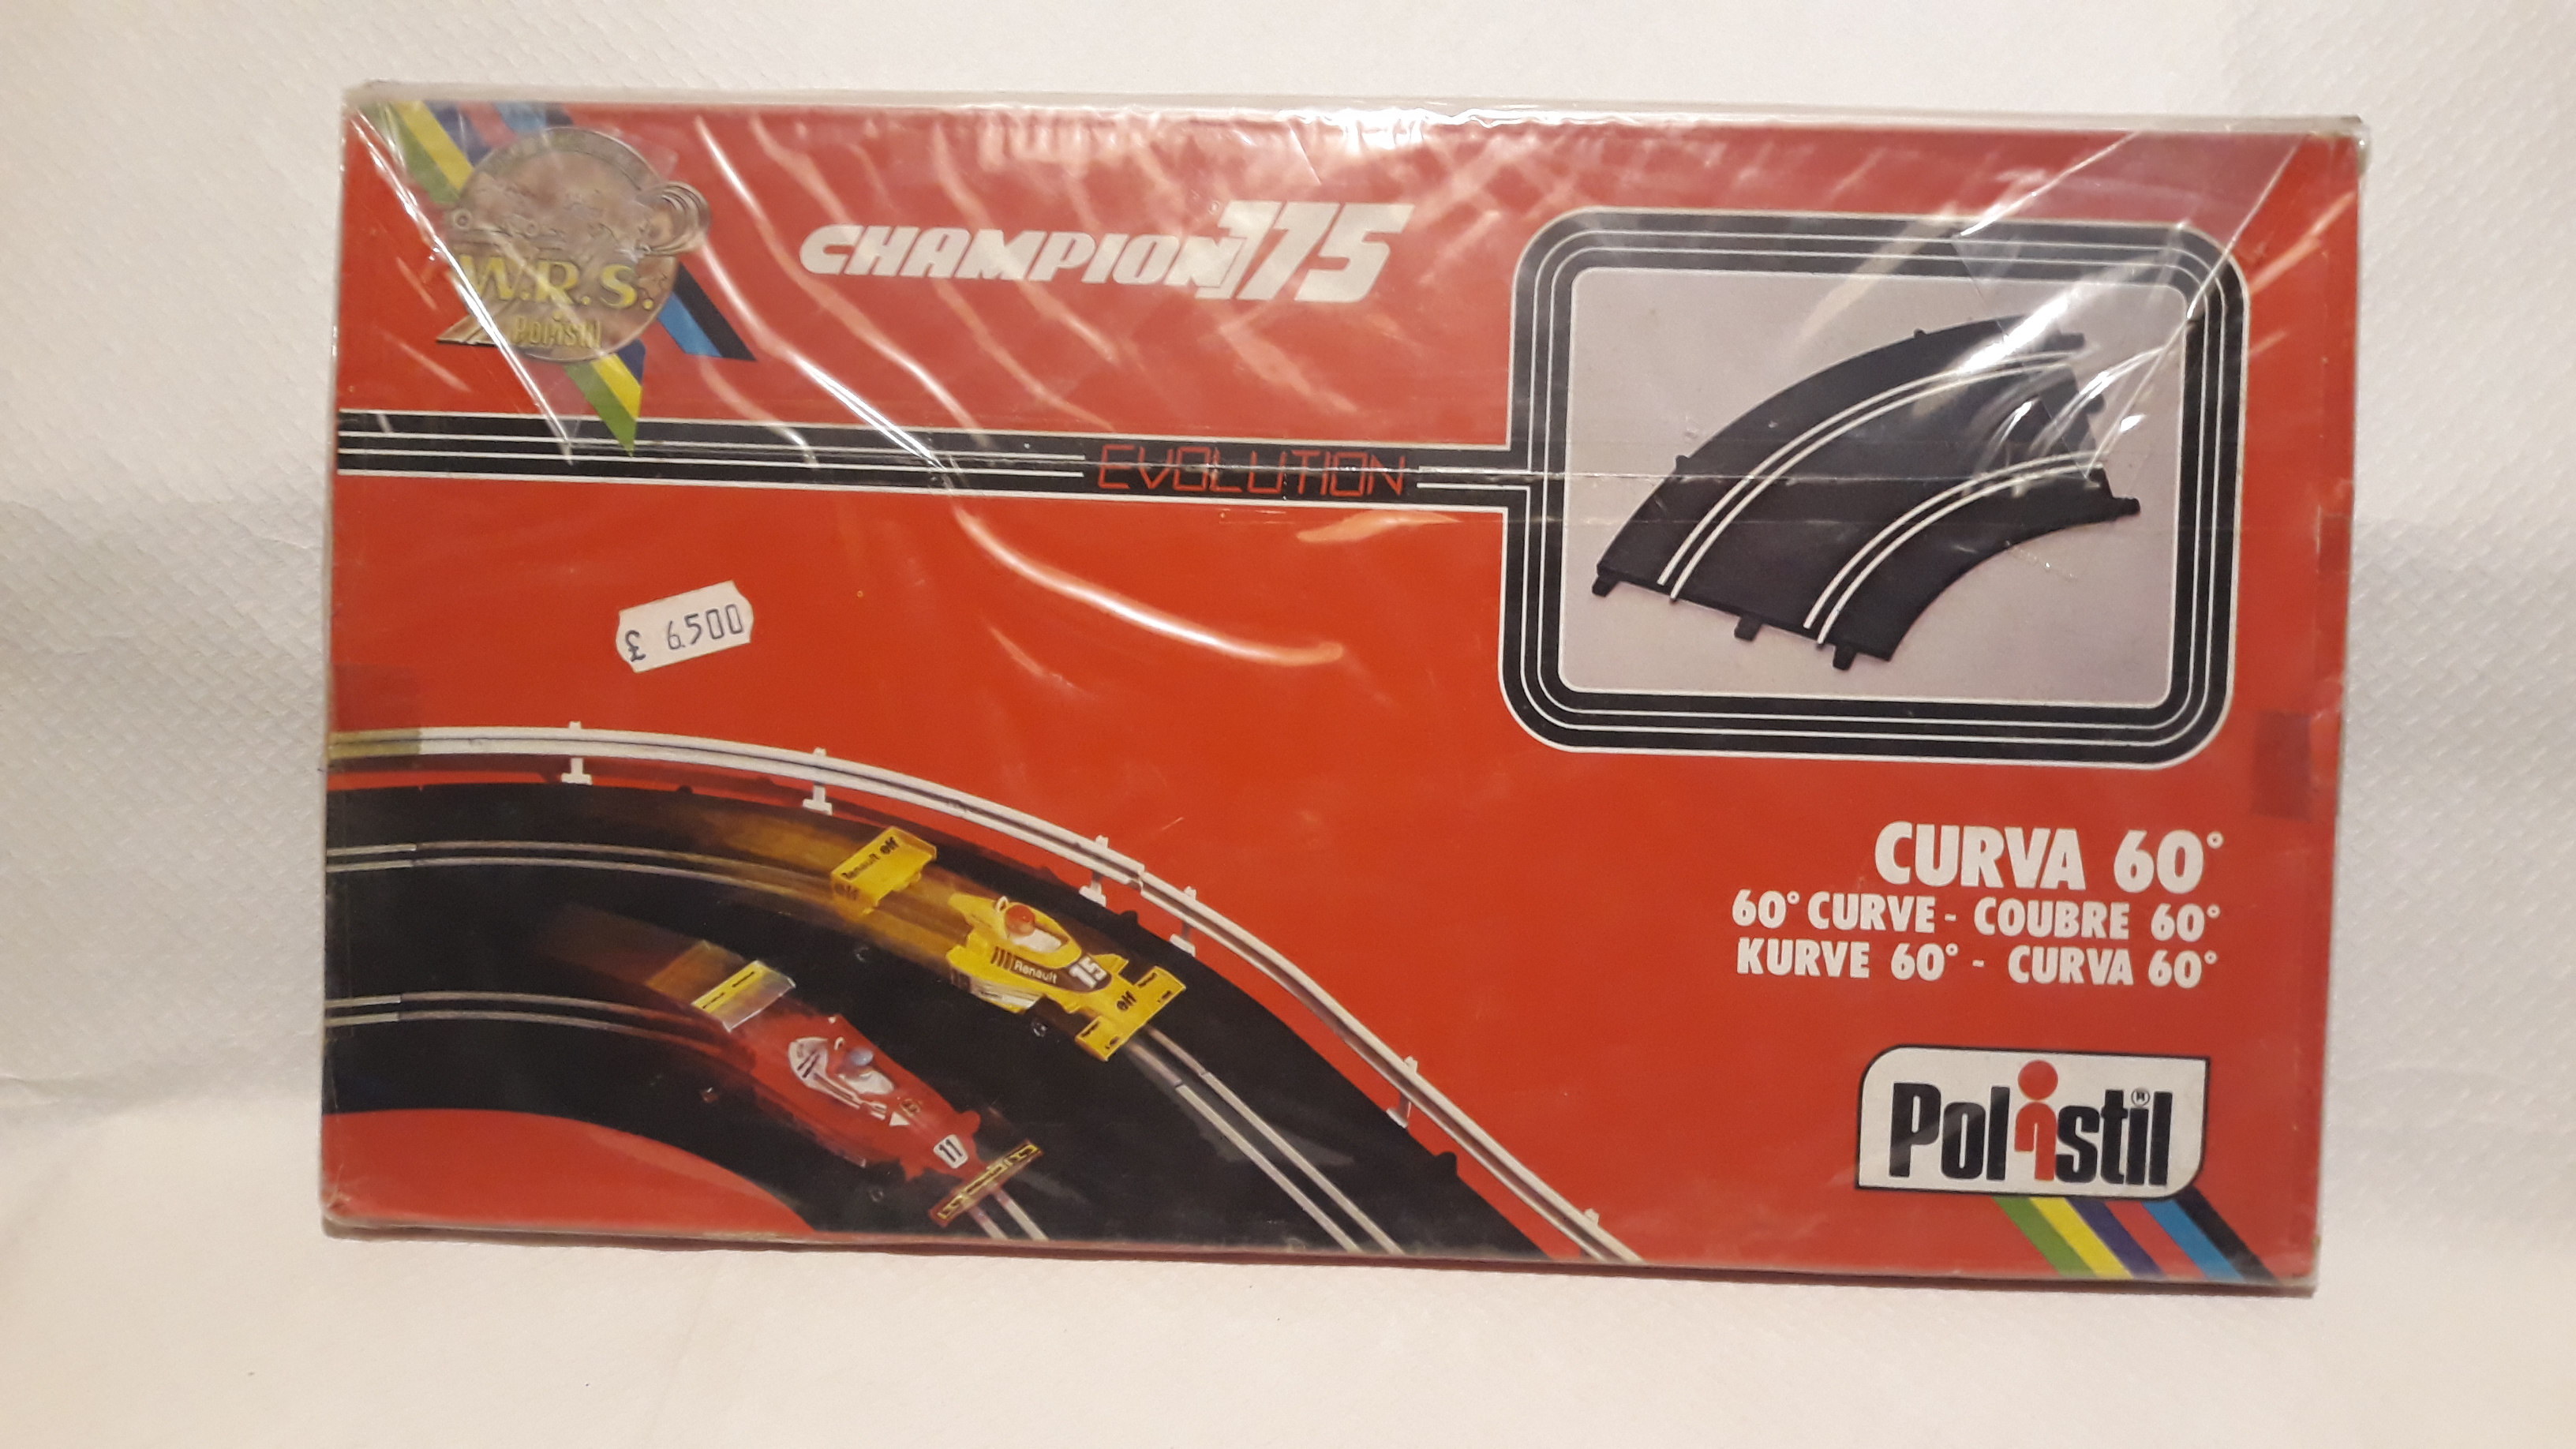 Componenti Pista Polistil Champion 775 Curva 60' - manuelkant